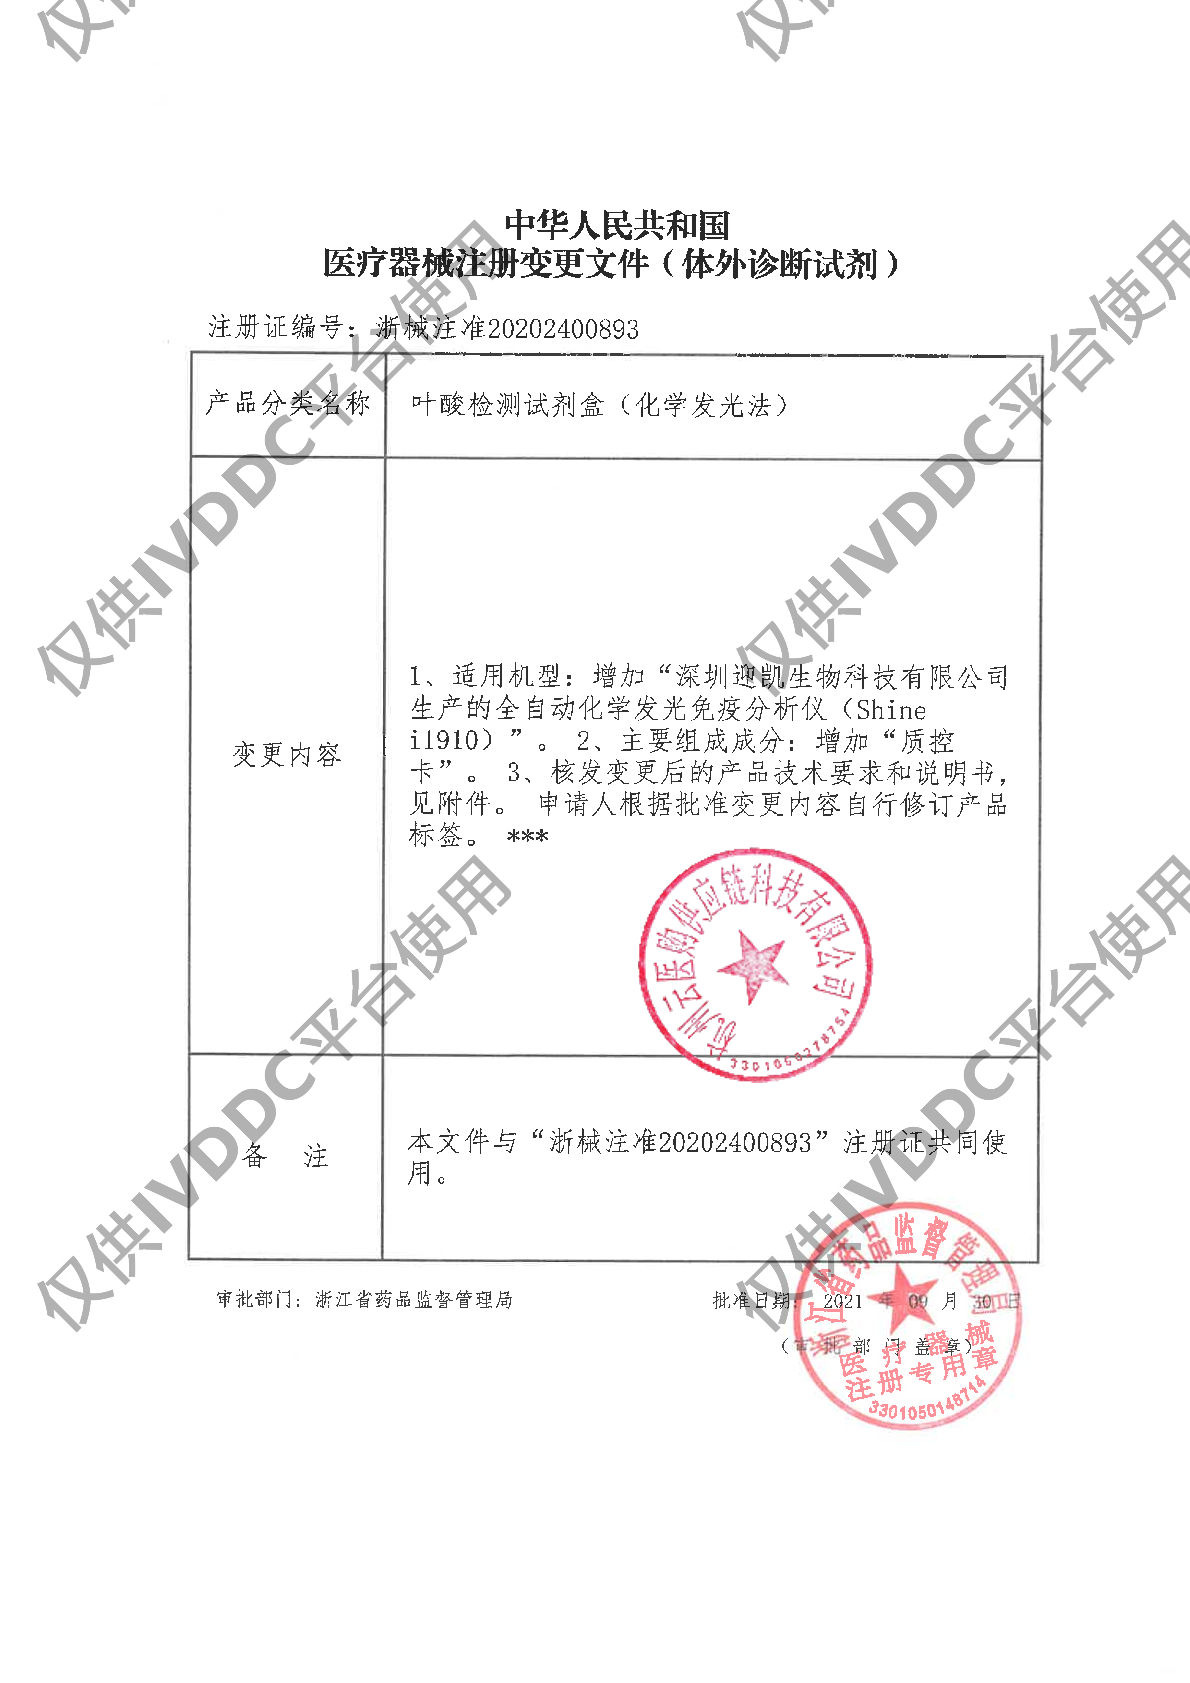 【宁波奥丞】叶酸检测试剂盒(化学发光法)注册证